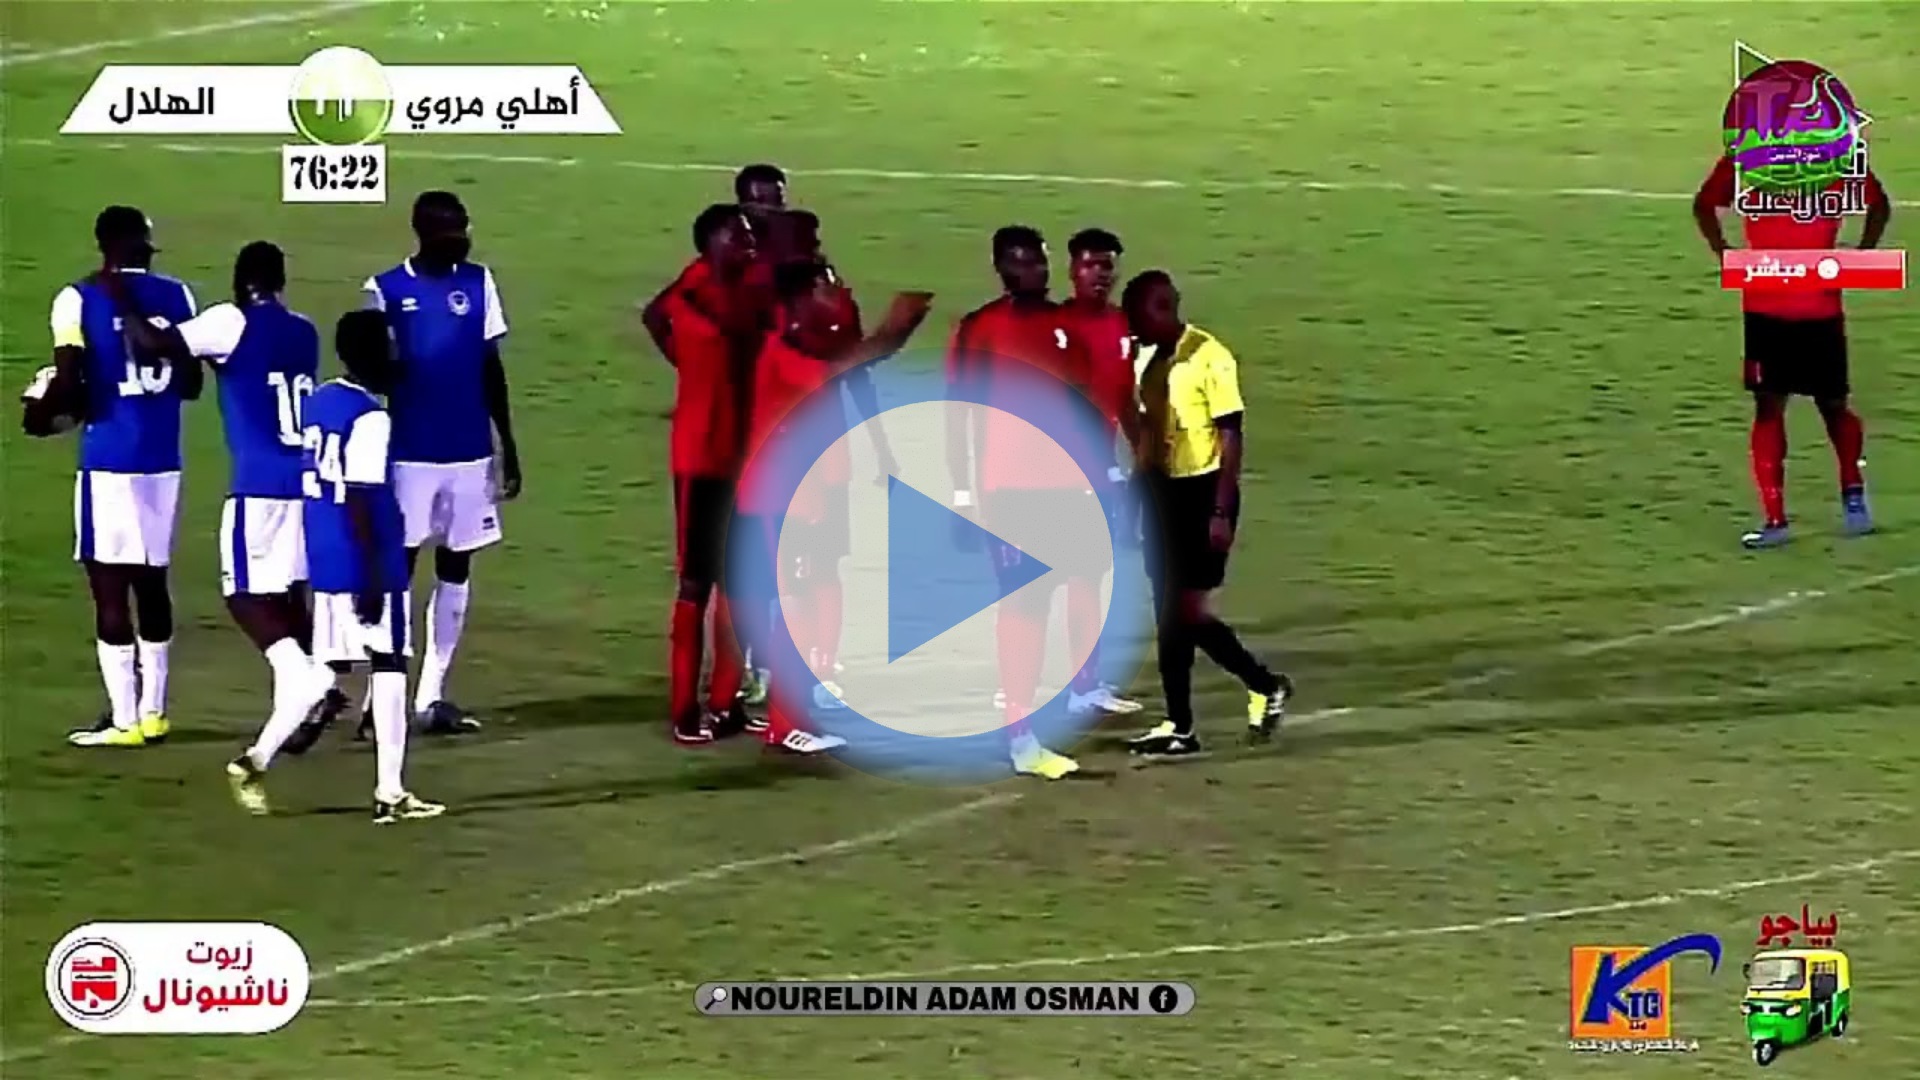 مشاهدة مباراة الهلال والأهلي مروي اليوم بث مباشر في الدوري السوداني الممتاز